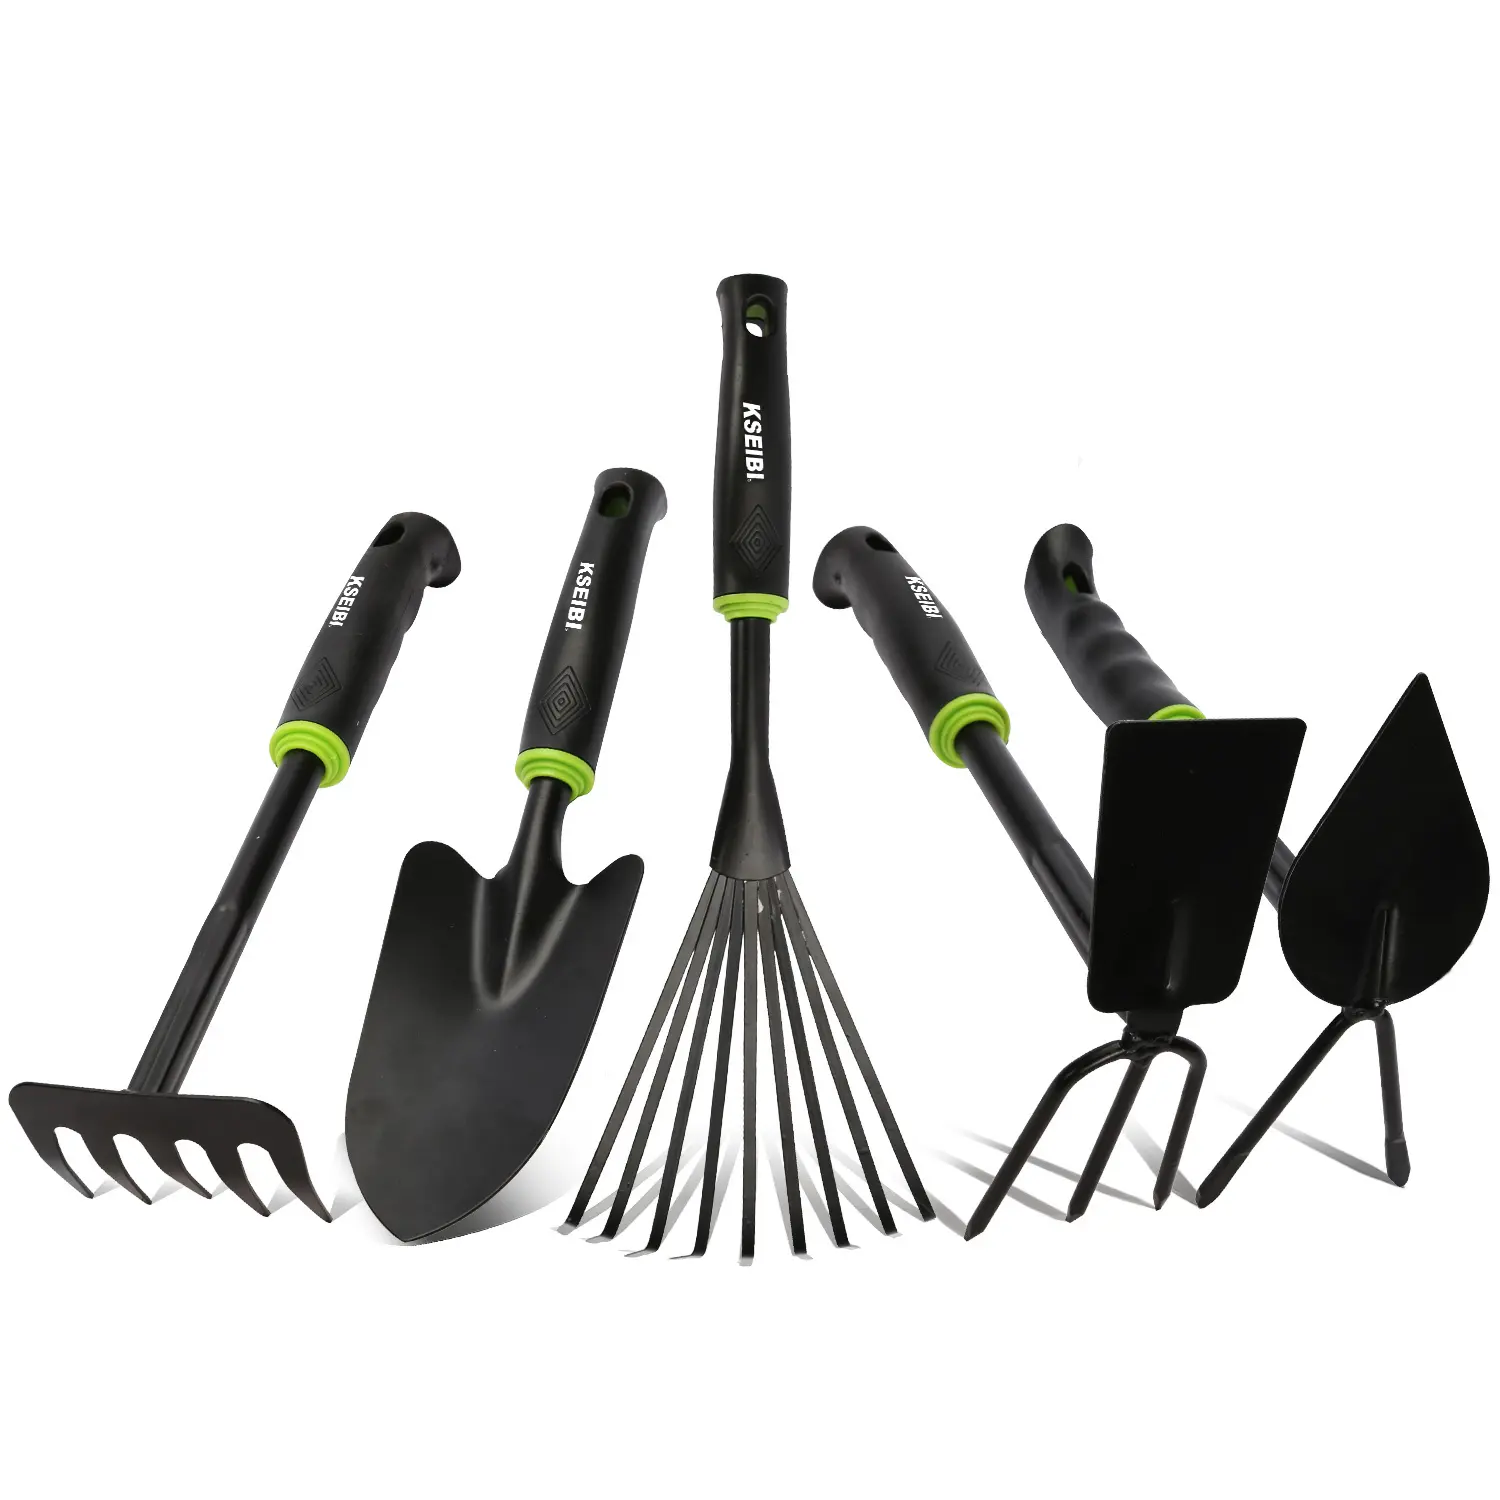 KSEIBI-Kit de herramientas de jardín de alta resistencia, 5 piezas, paleta de mano